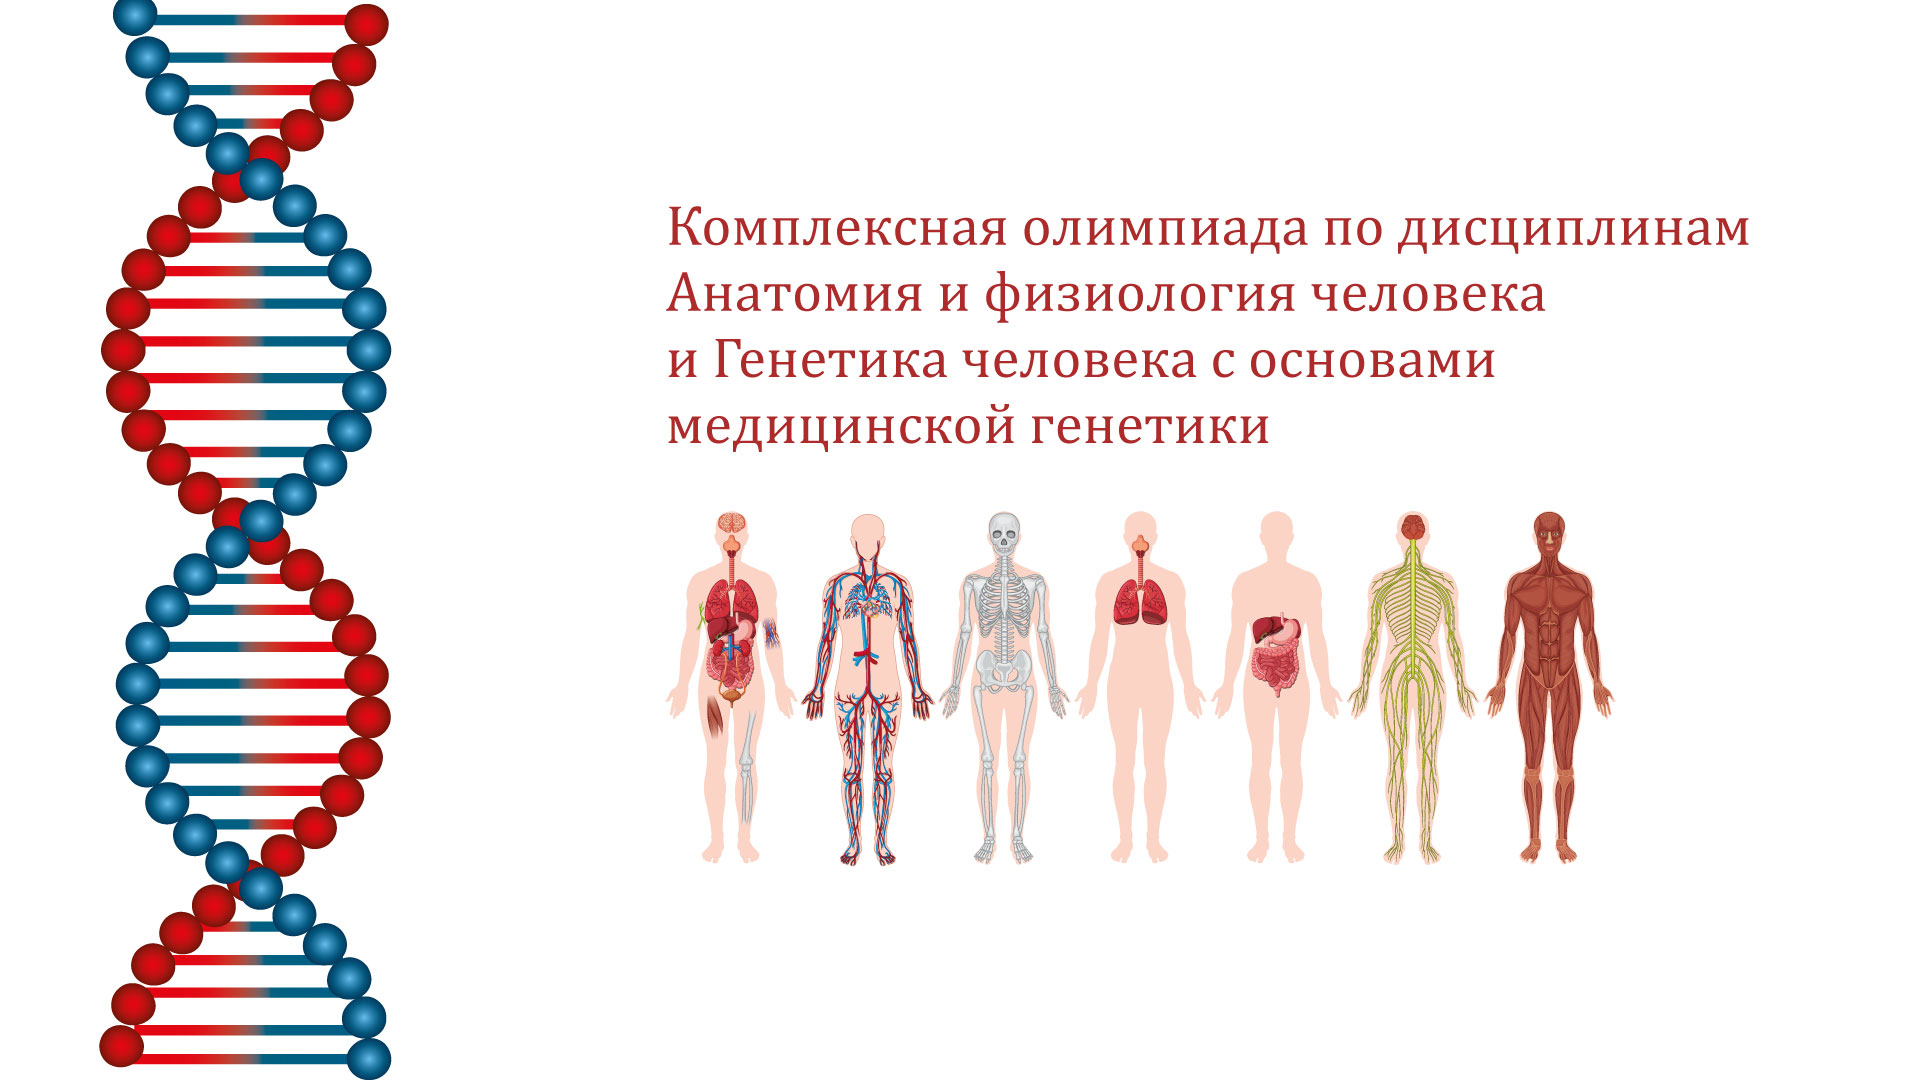 anatomiya-genetika.jpg (232 KB)